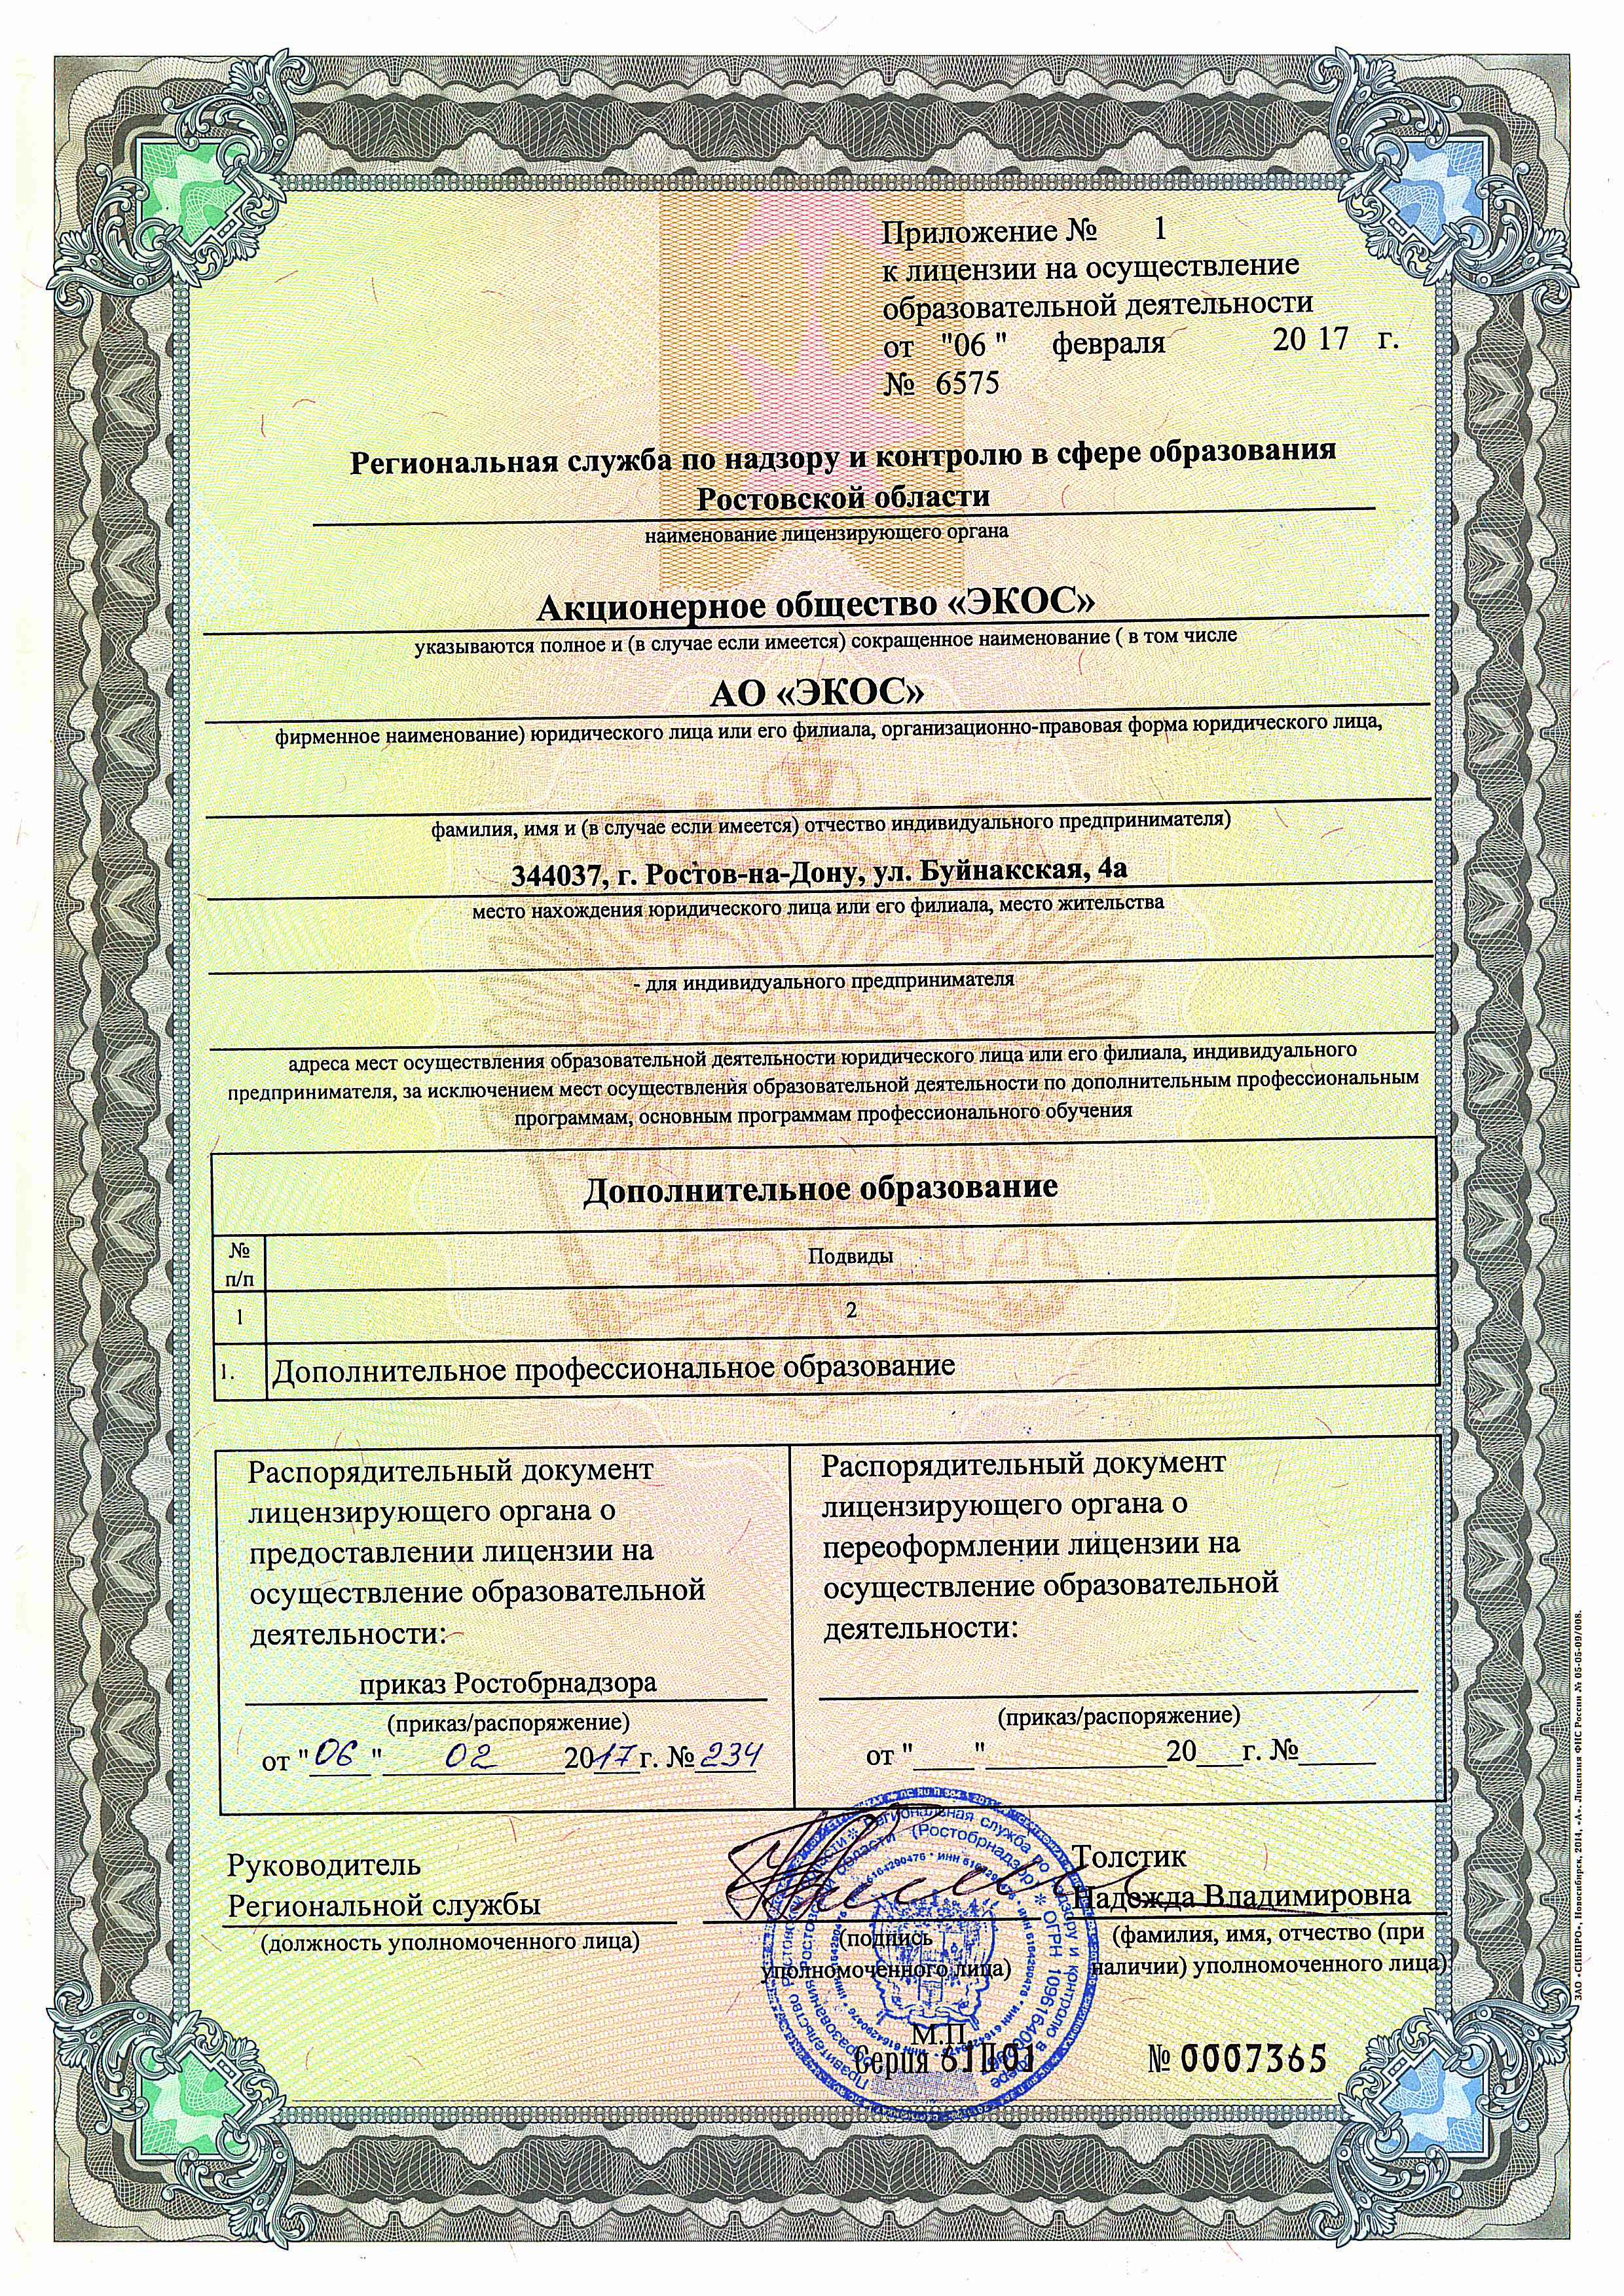 Радиационная безопасность документ. Сертификат радиационной безопасности. Лицензии радиационной безопасности. Лицензия на осуществление безопасности деятельности по радиационной.